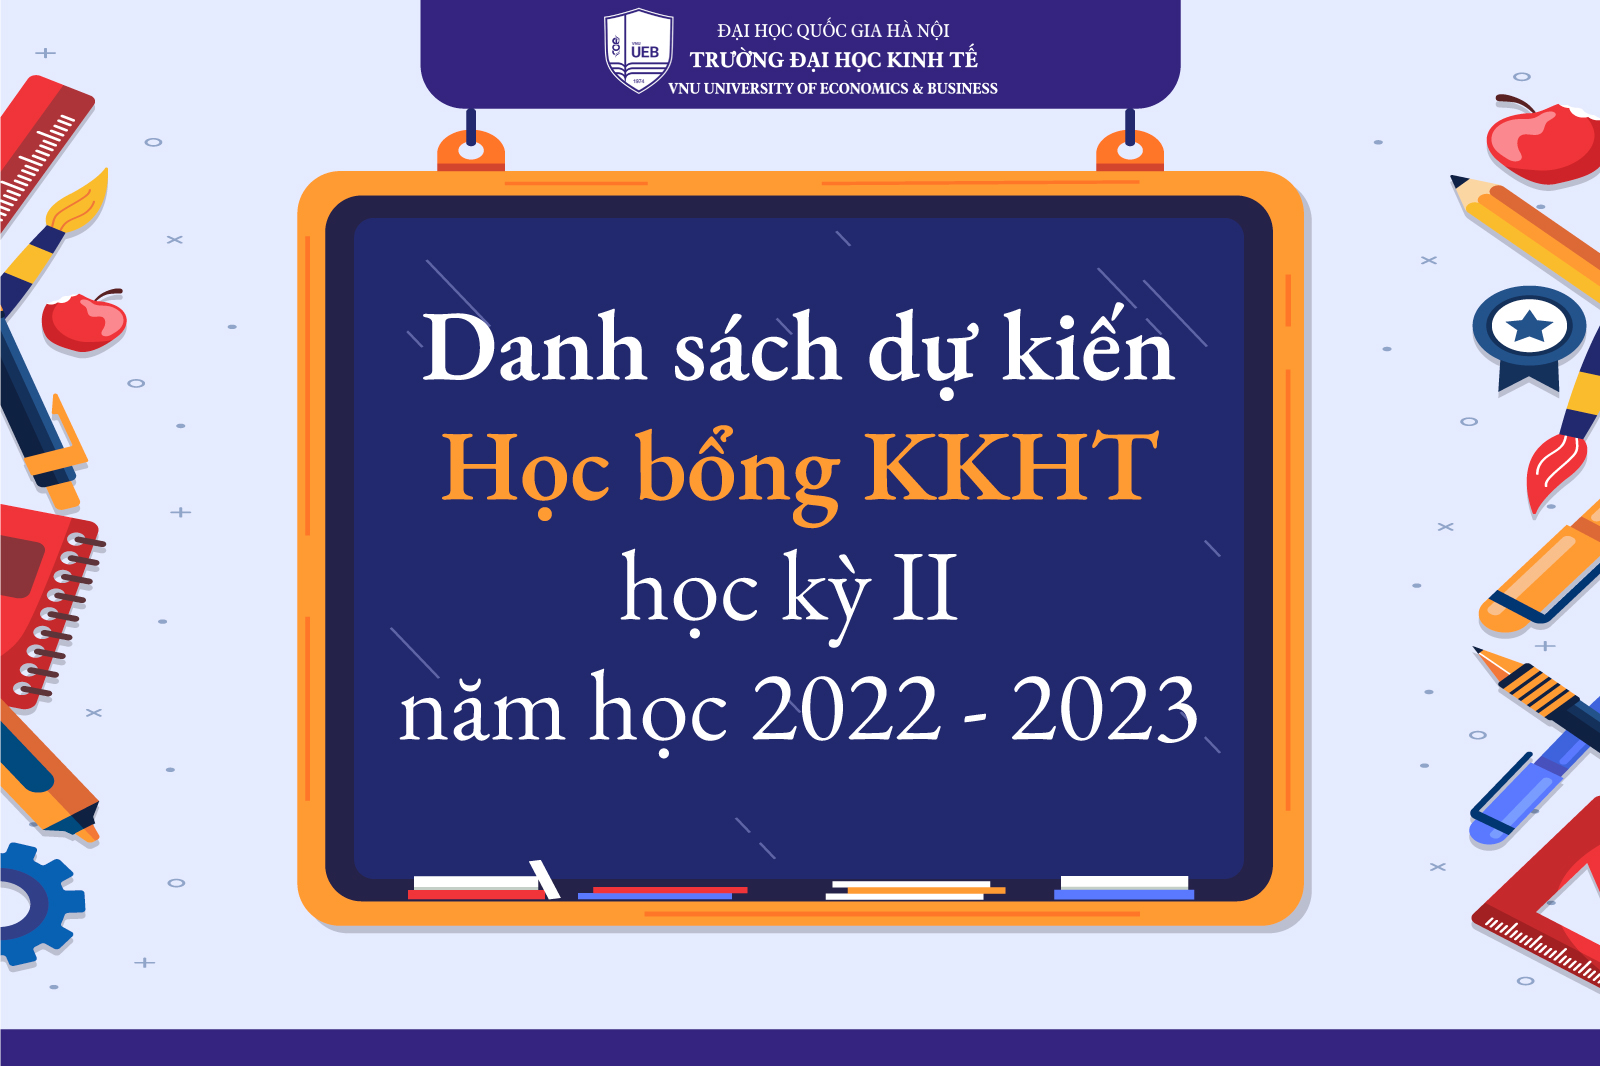 Danh sách dự kiến sinh viên chính quy nhận học bổng khuyến khích học tập học kỳ II năm học 2022-2023